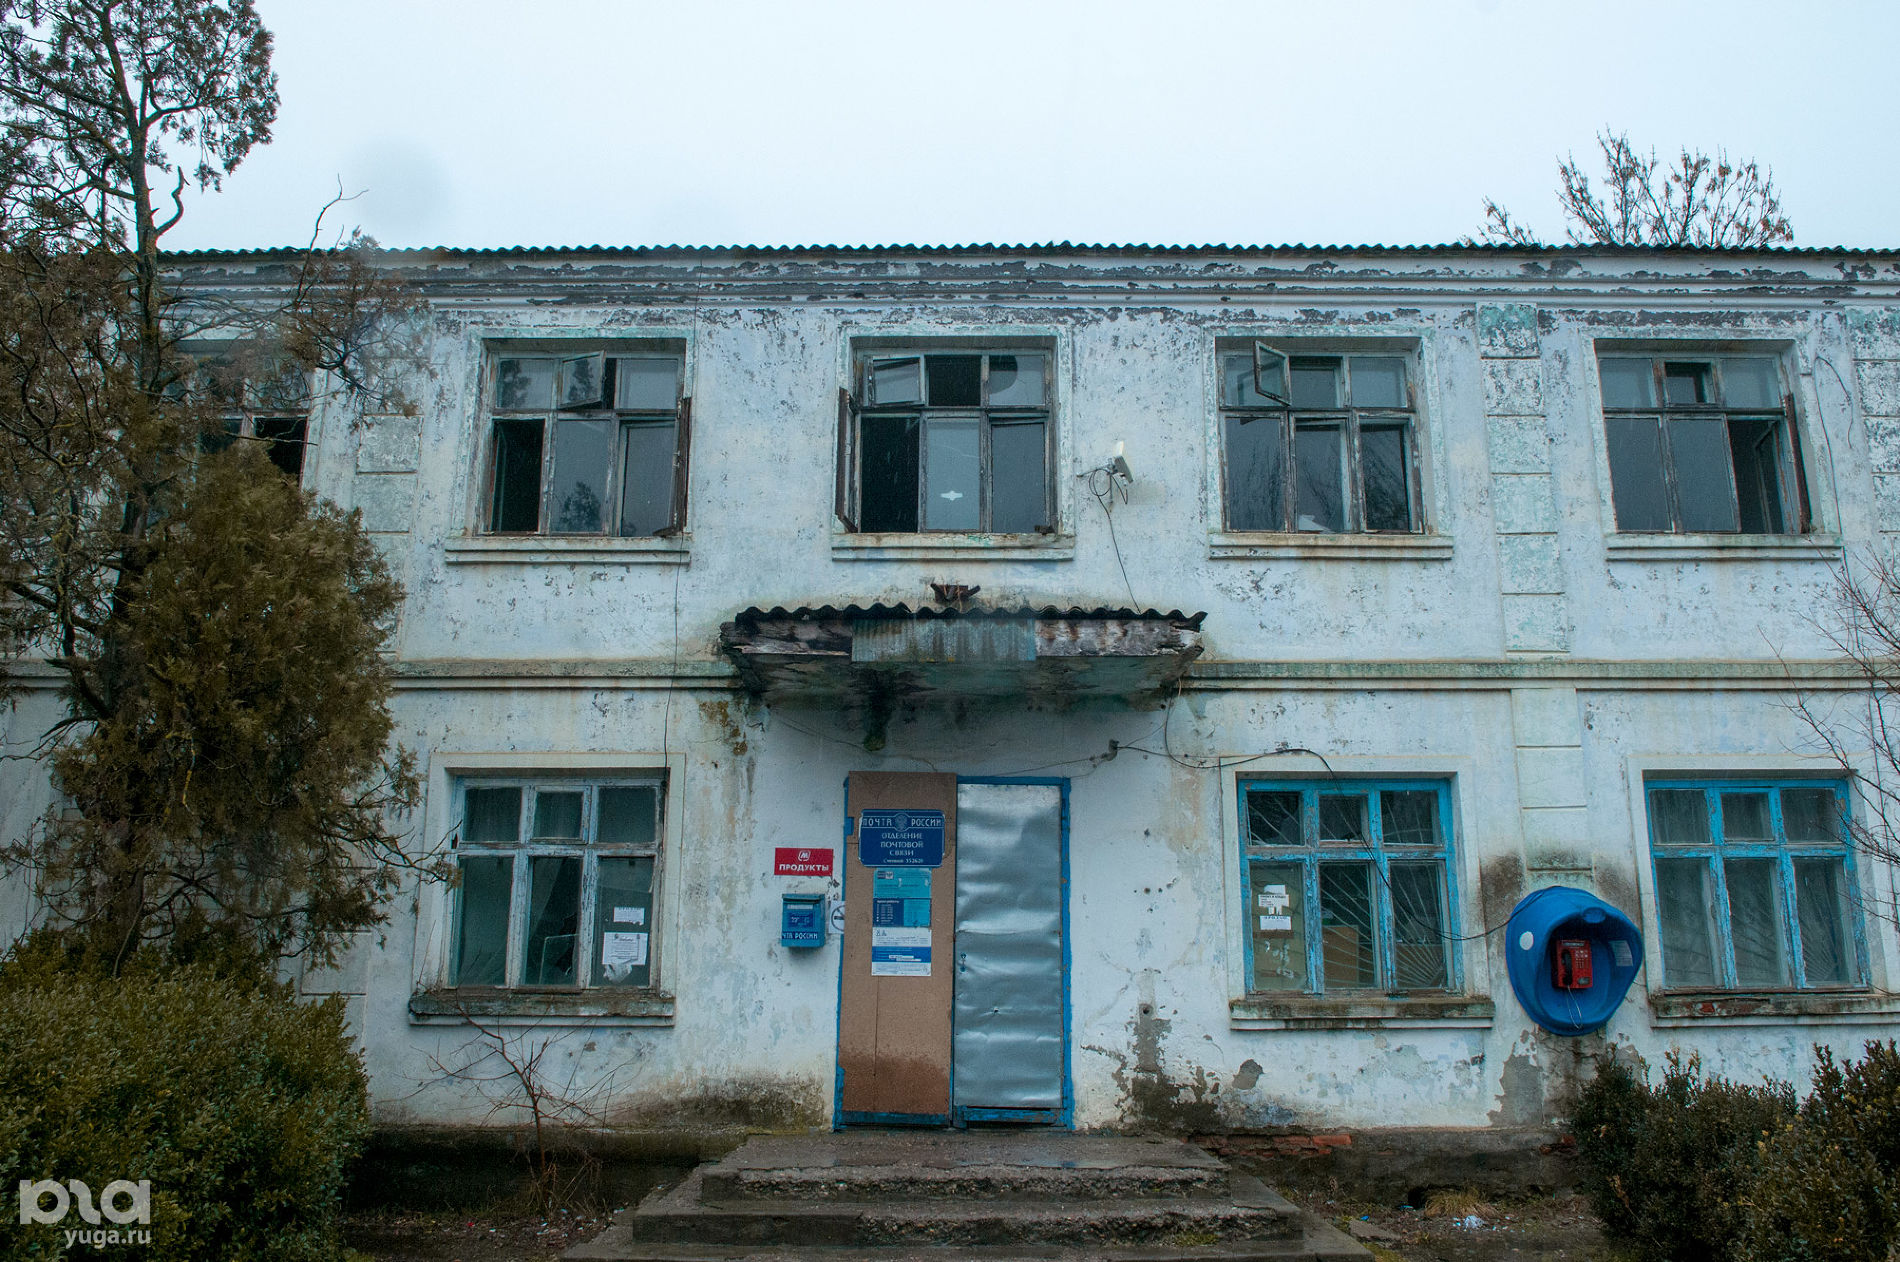 Поселок Степной, находящийся в 4 км от белореченского полигона © Фото Дмитрия Пославского, Юга.ру